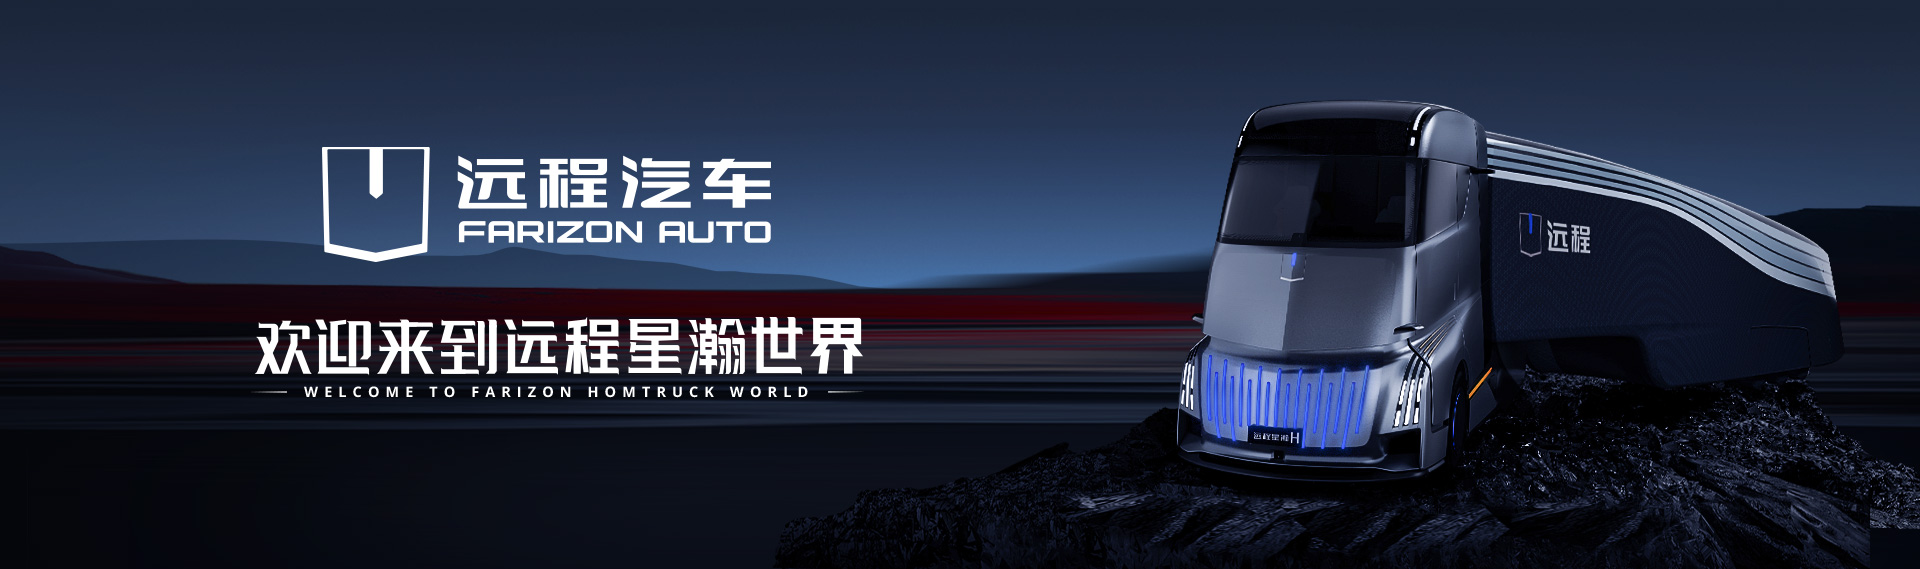 感受中国科技力量 远程星瀚H重磅发布